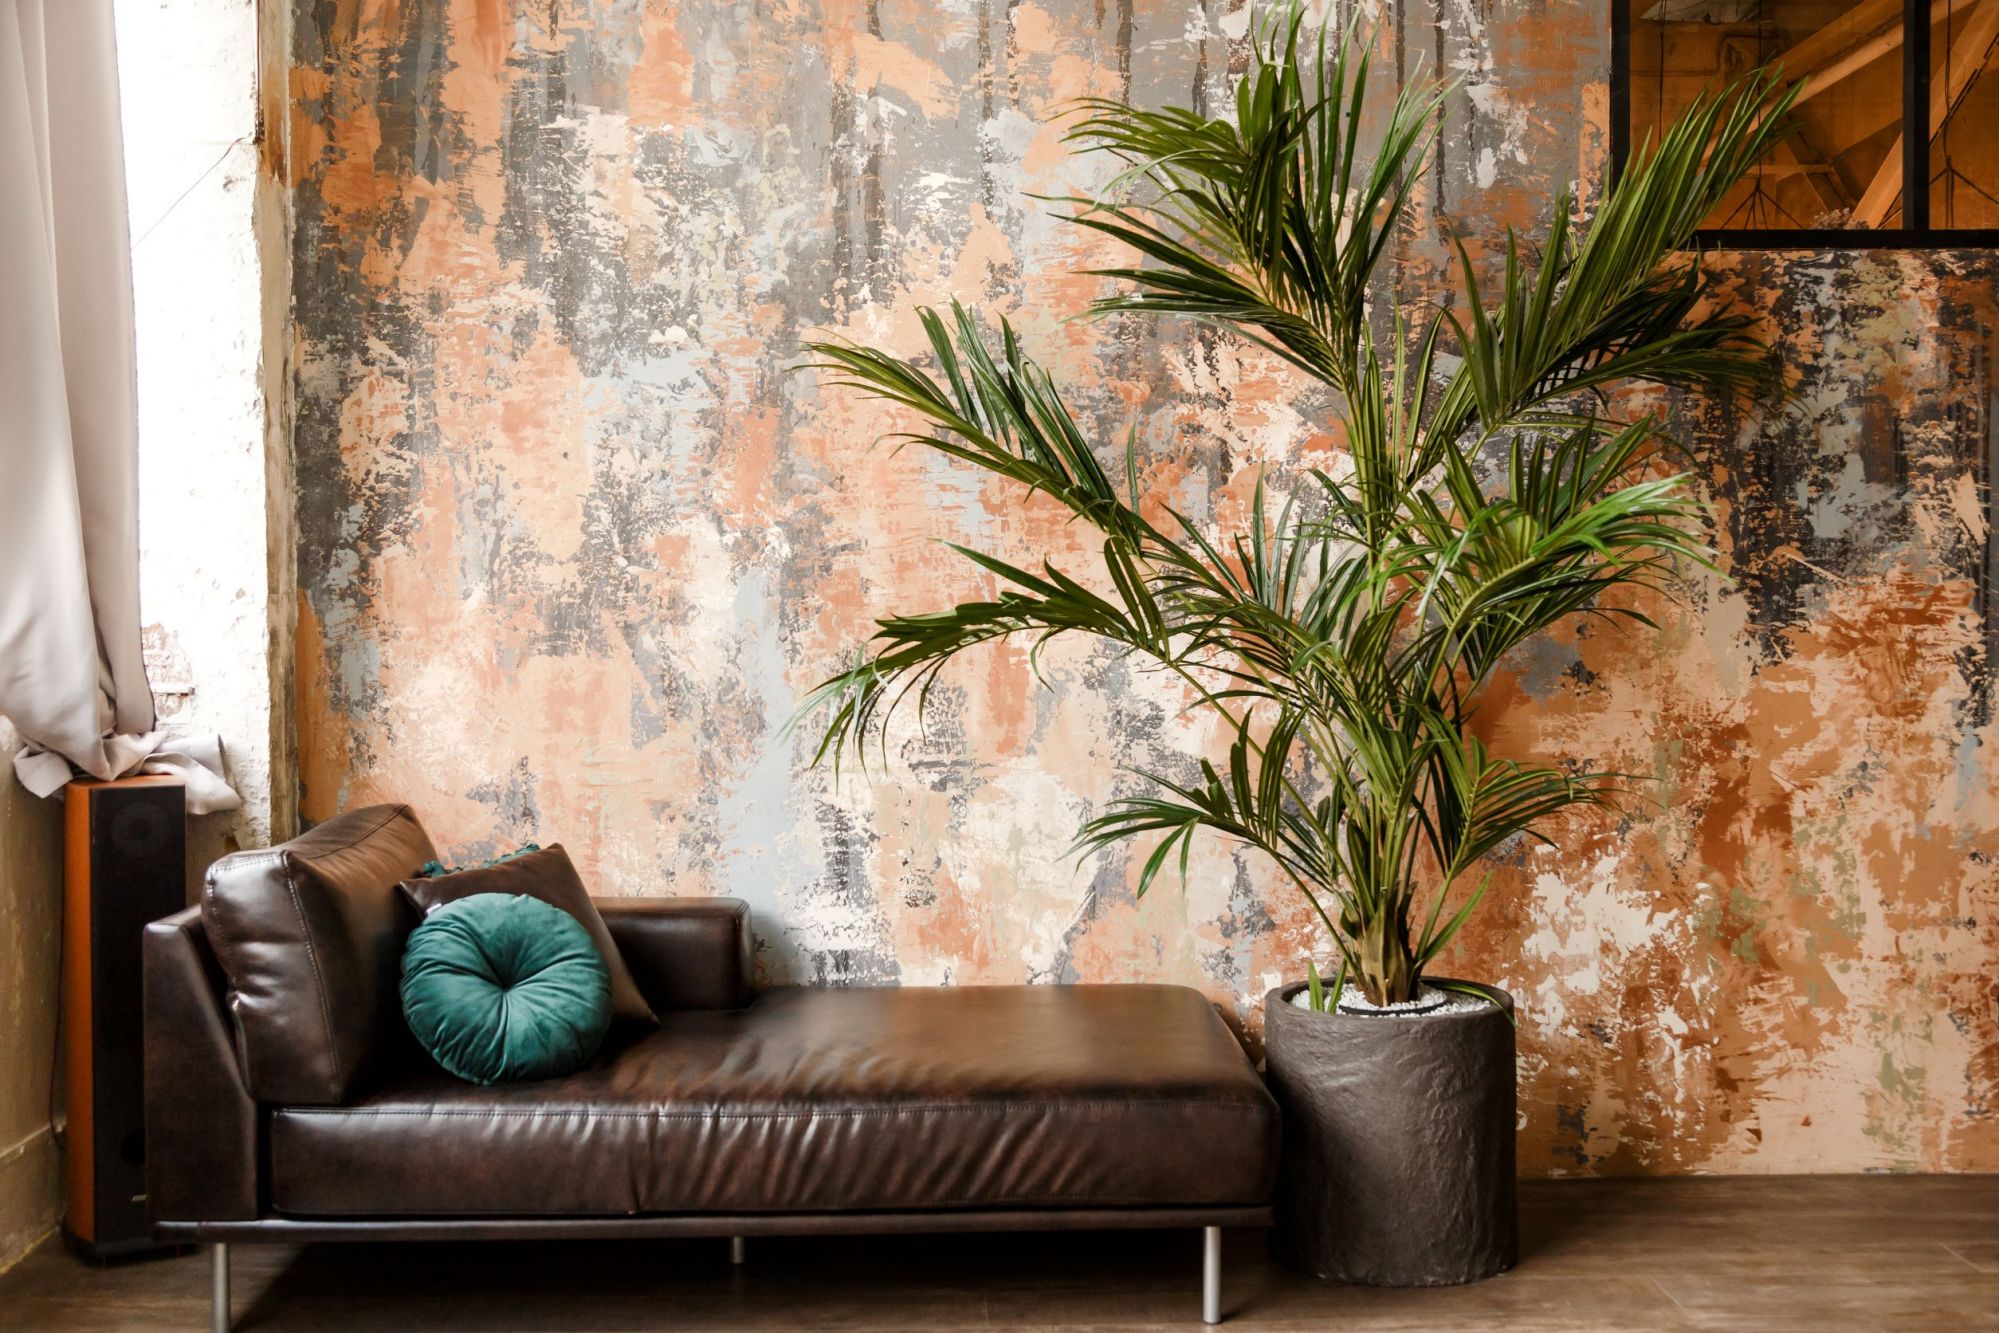 Palma pokojowa na tle kontrastującej kolorystycznie ściany w odcieniach brązu i rudości